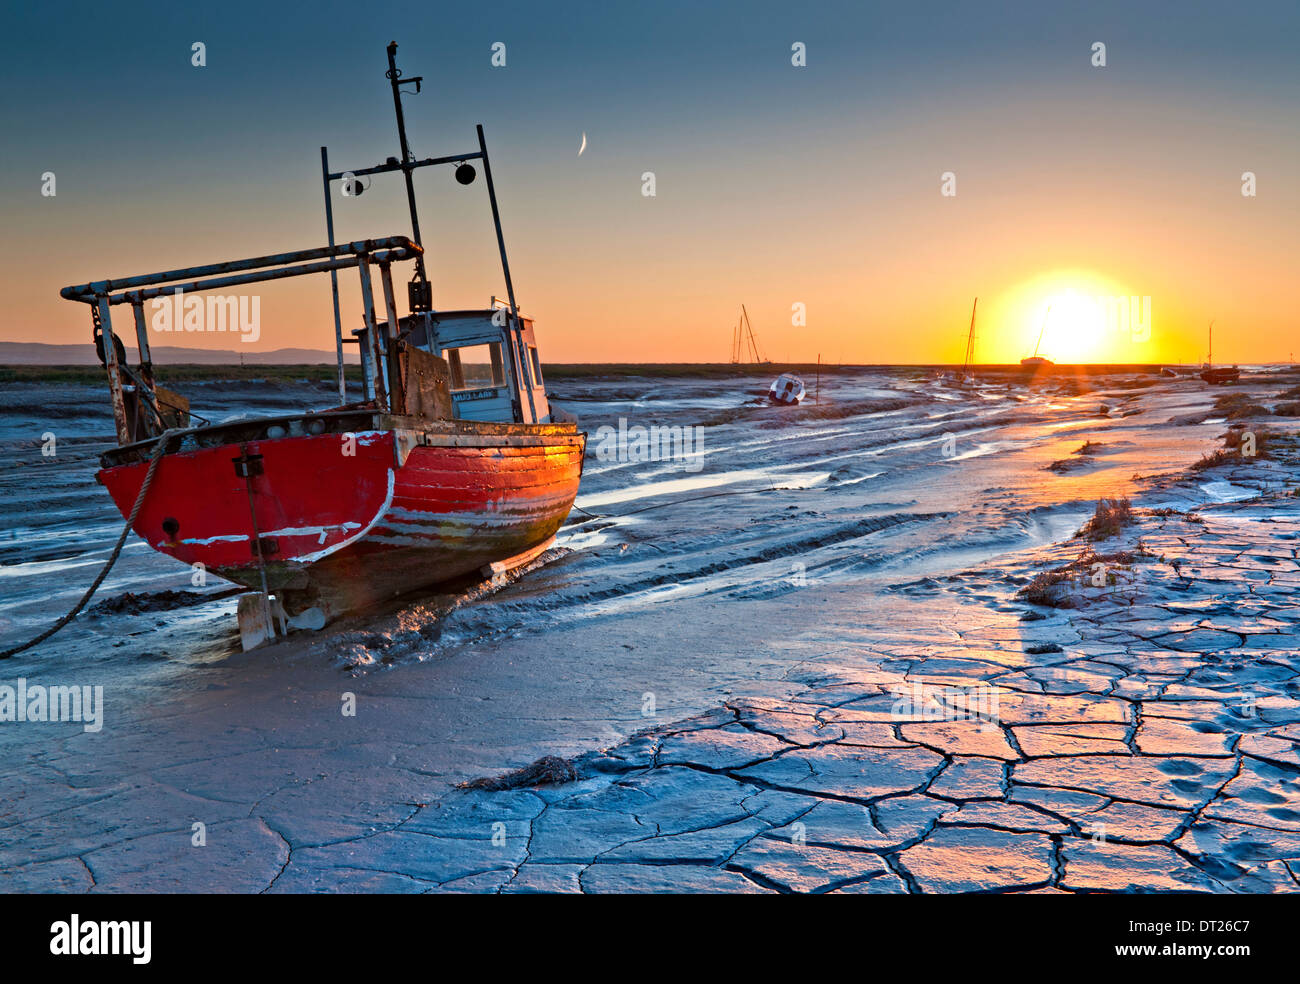 Les vasières et les bateaux de pêche au coucher du soleil, Heswall, l'estuaire de la Dee, le Wirral, Merseyside, England, UK Banque D'Images